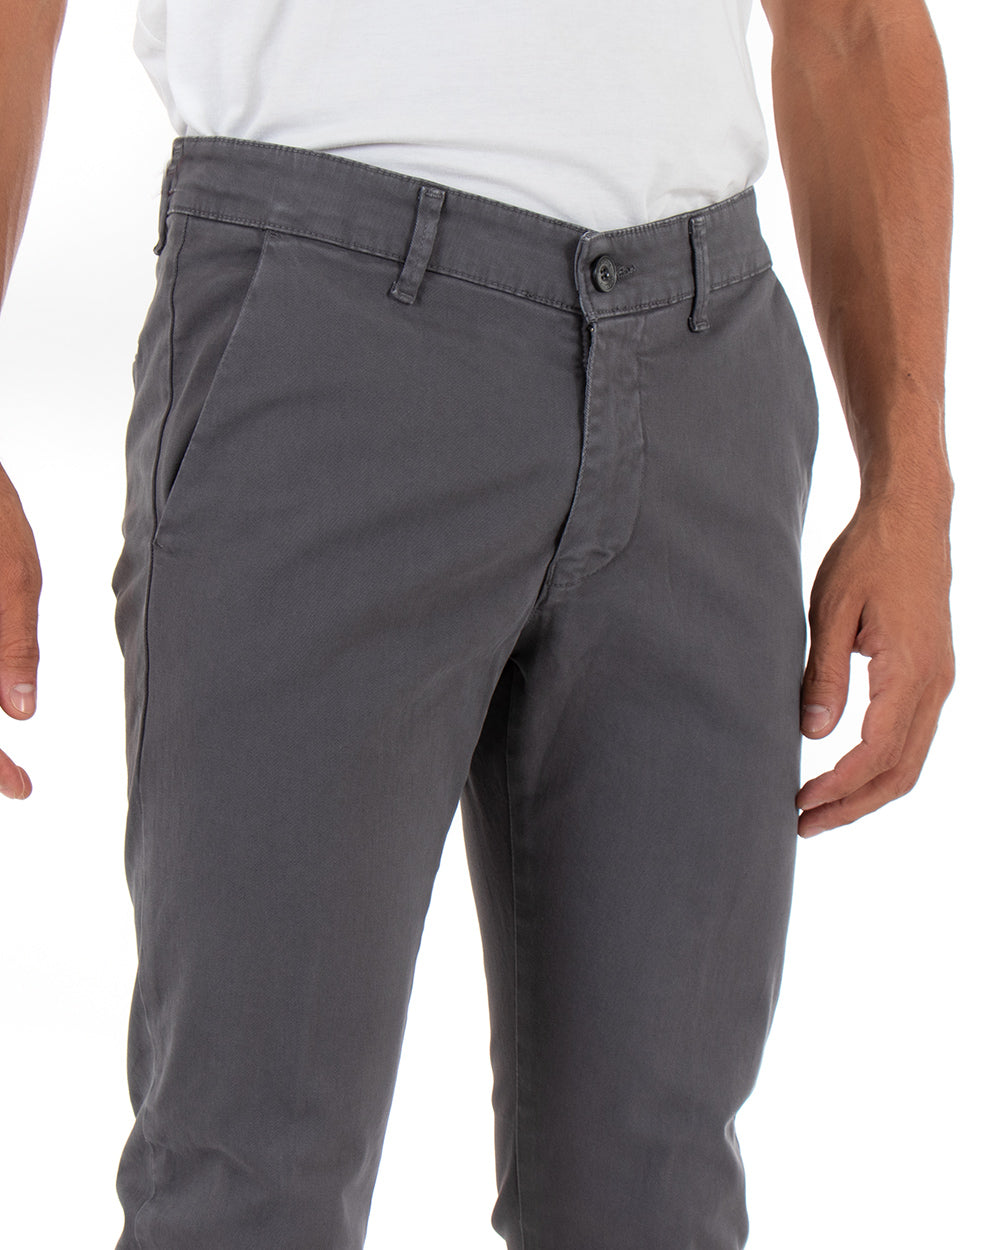 Pantaloni Uomo Tasca America Lungo Classico Slim Grigio Scuro GIOSAL-P5406A